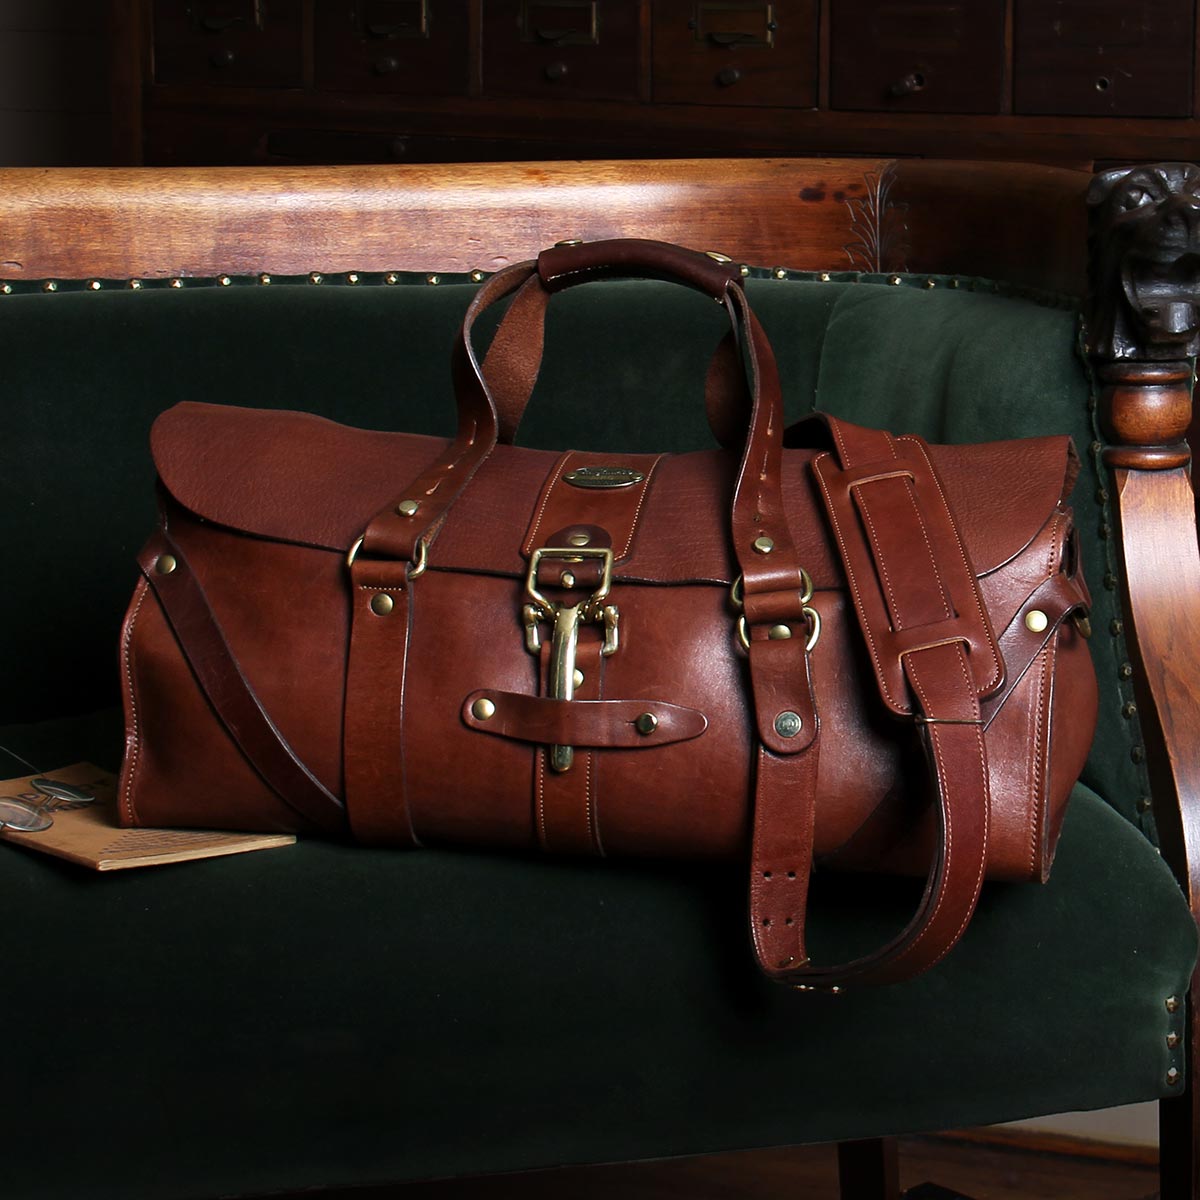 The Leather Weekender: Brown Leather Weekend Bag